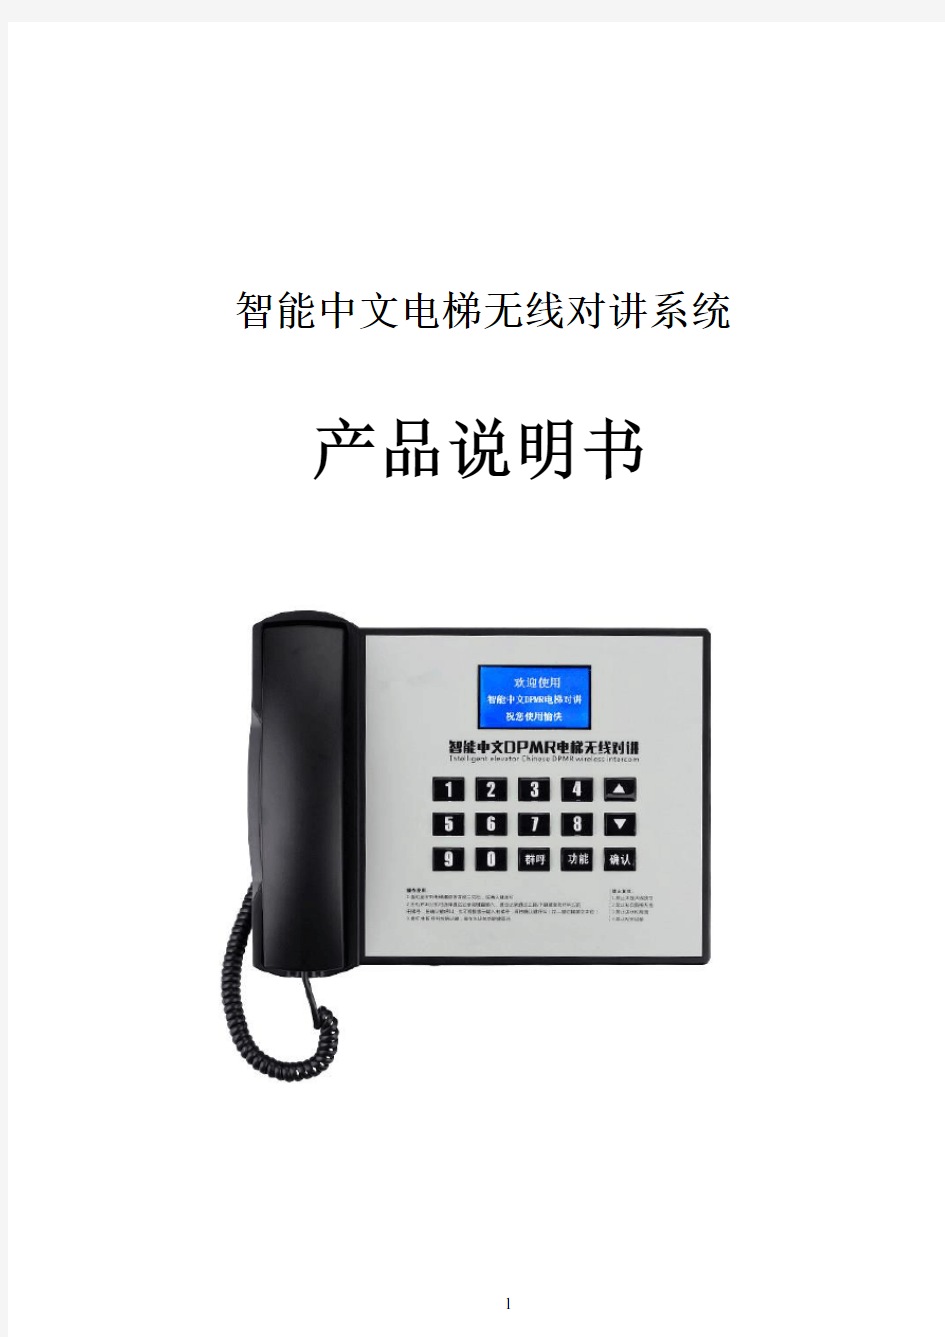 智能中文电梯无线对讲系统